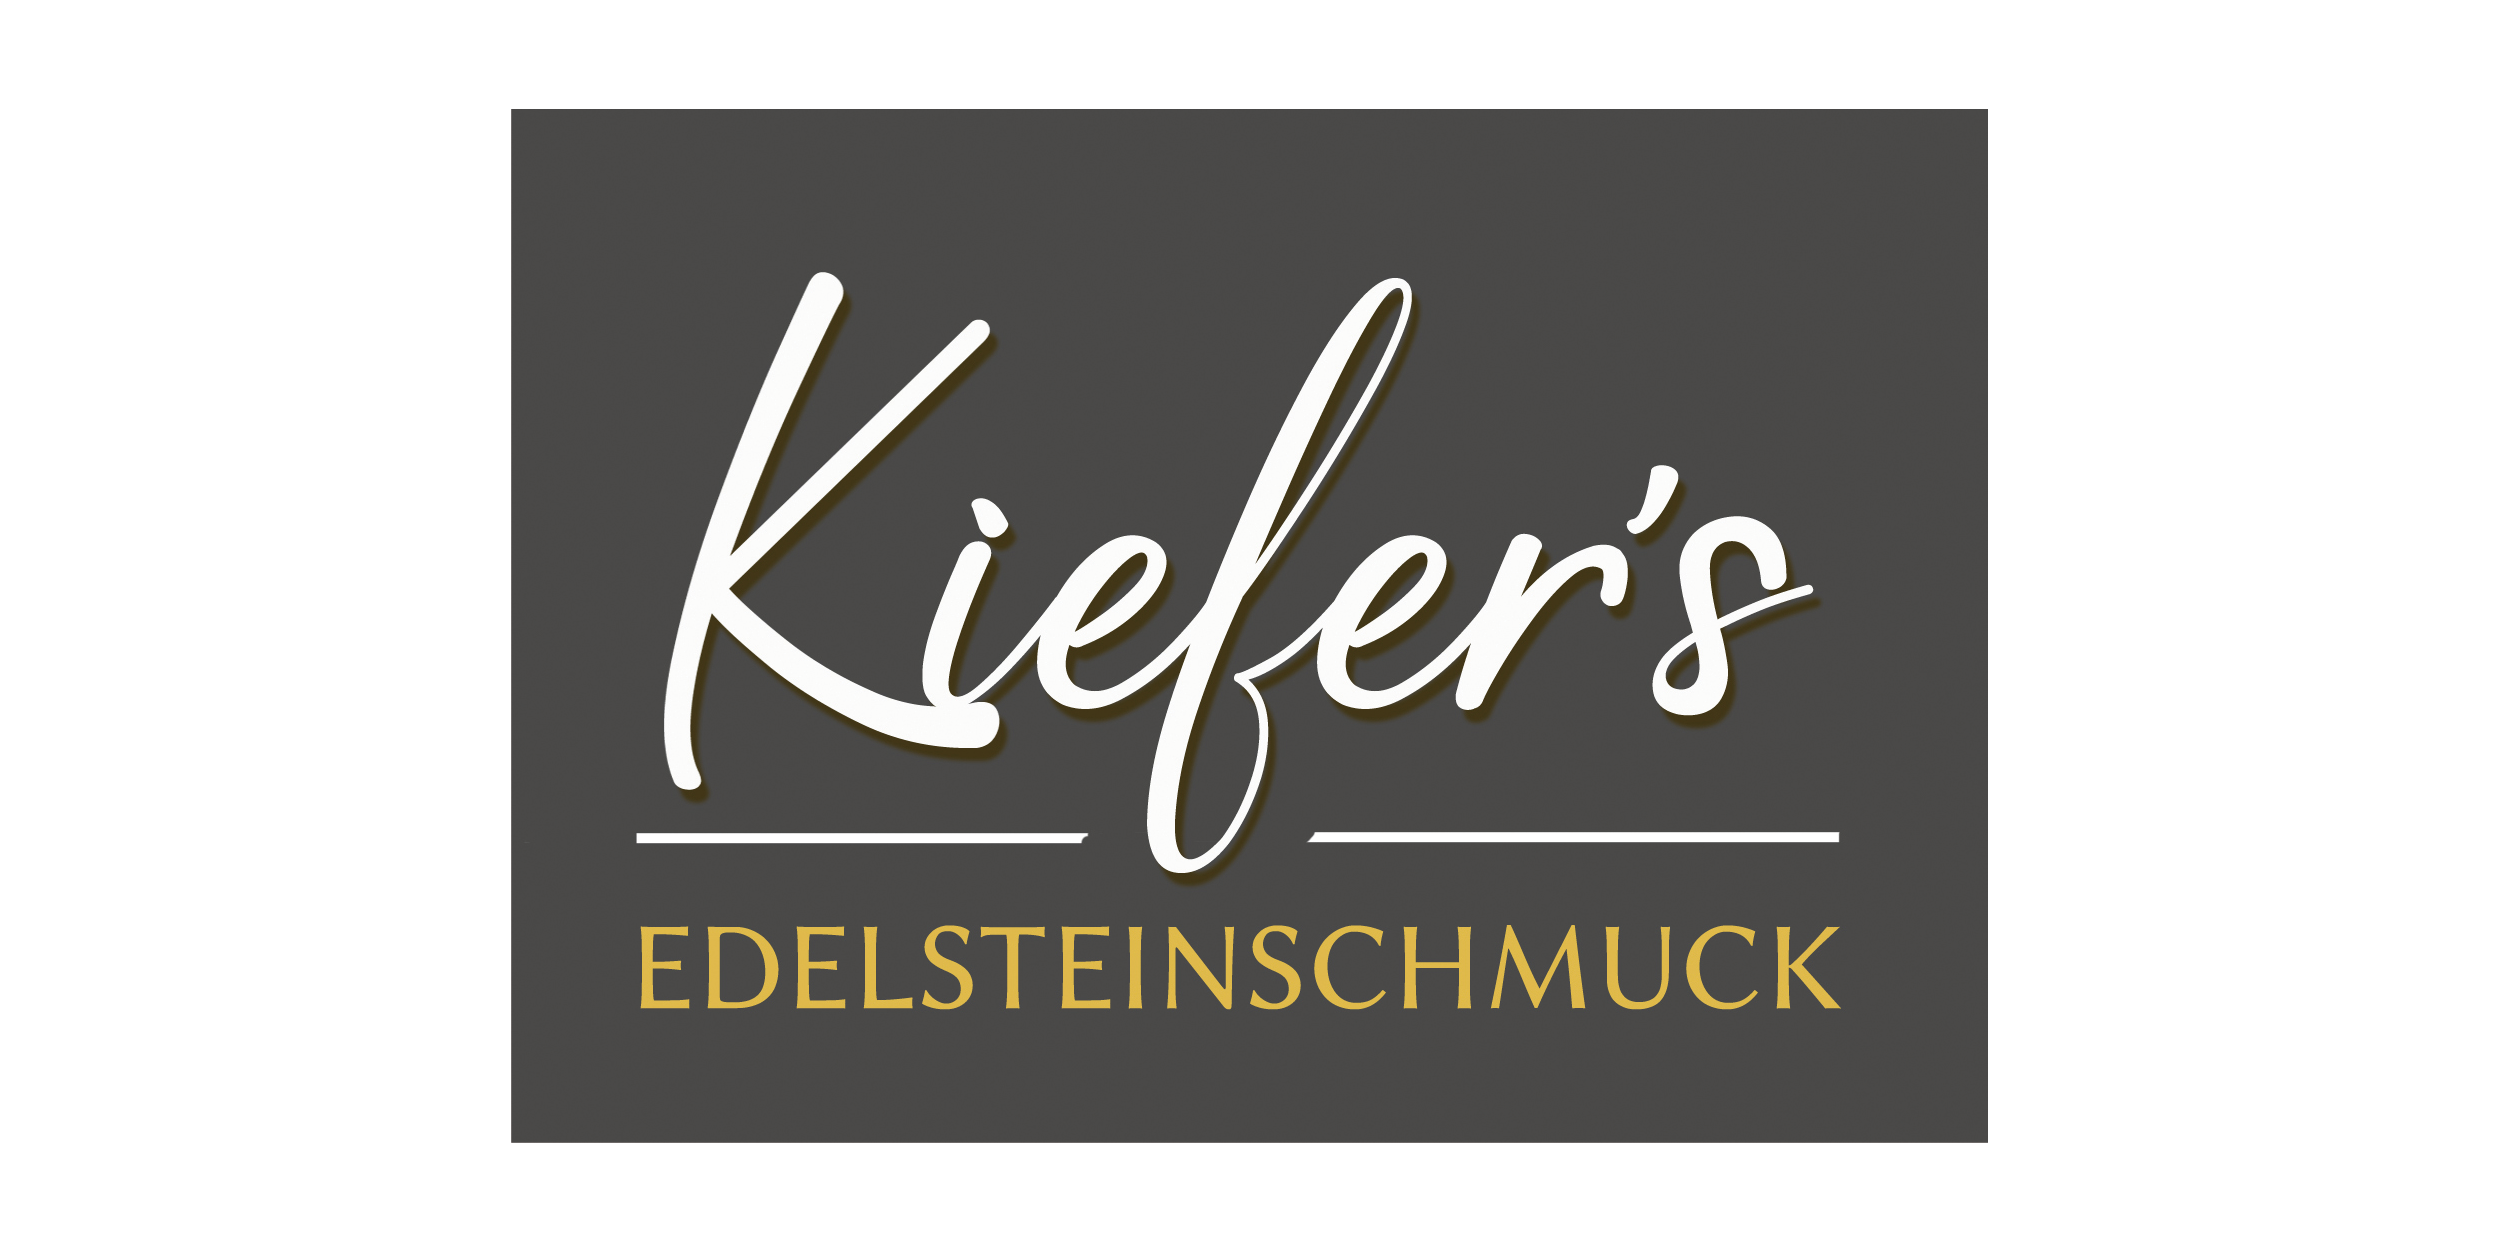 Kiefers'Edelstein